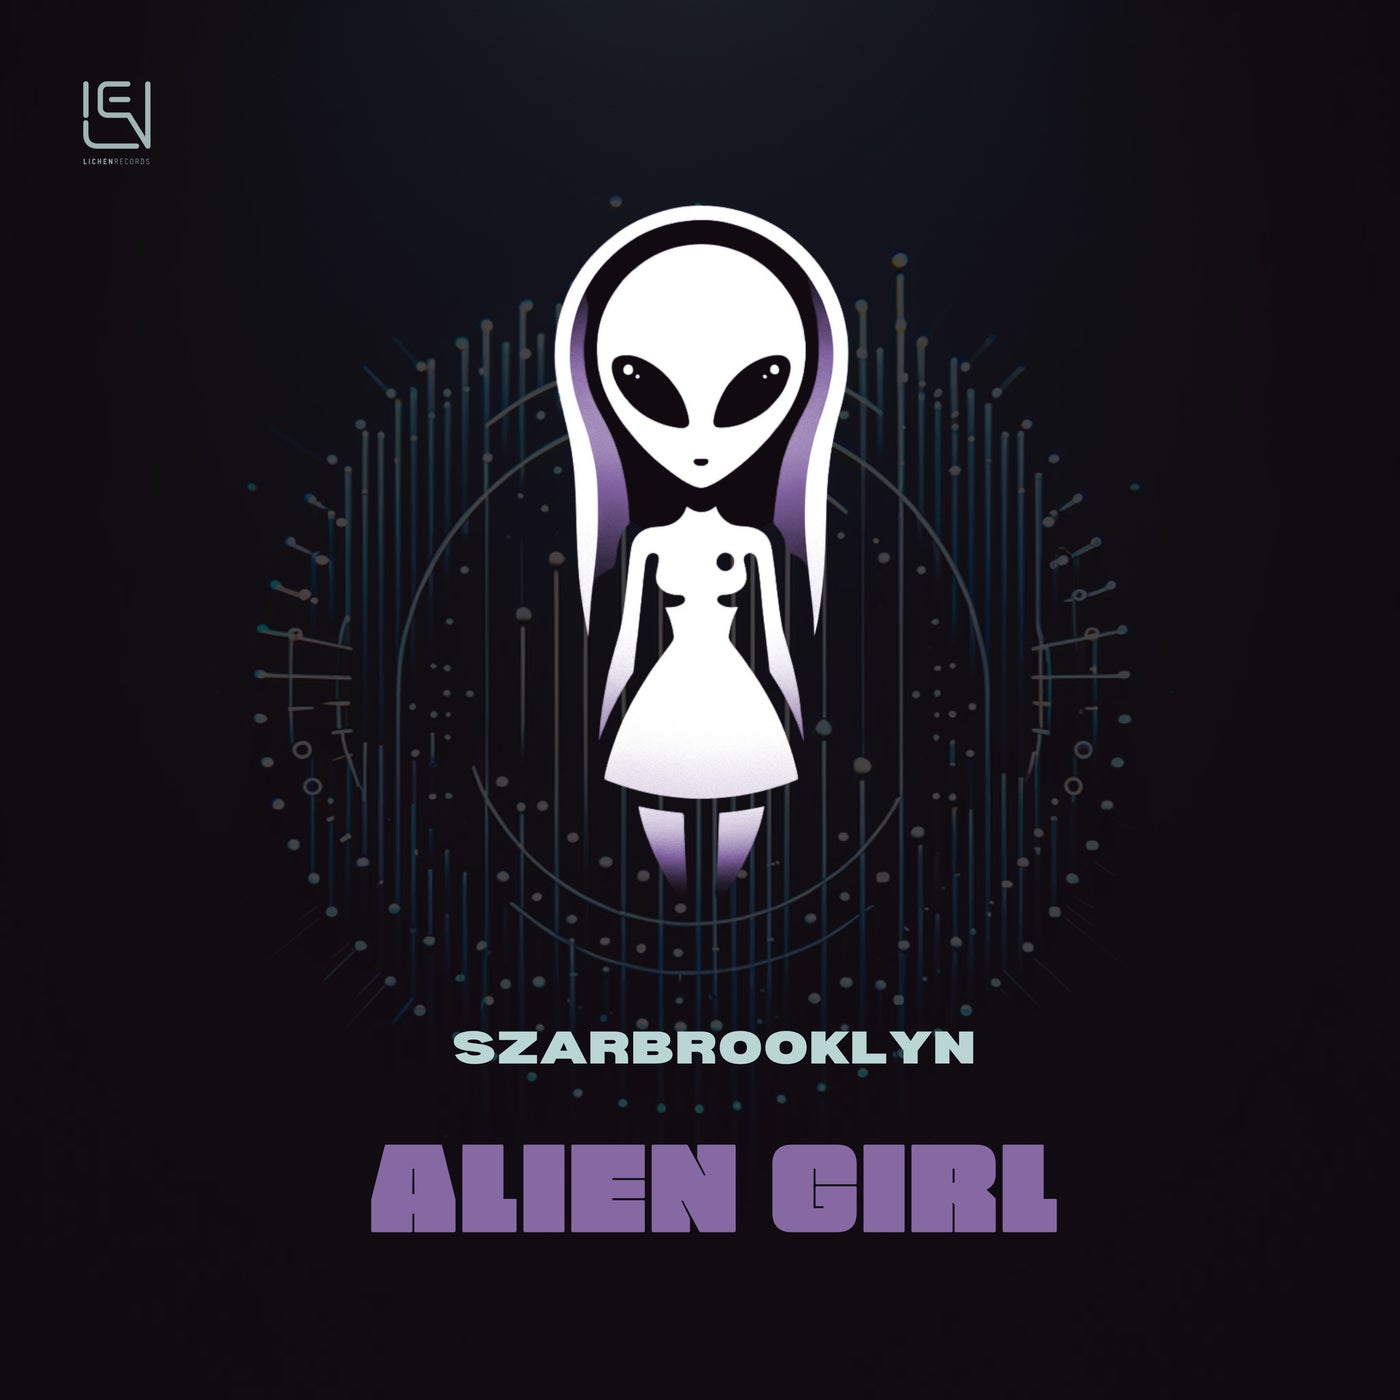 Alien Girl